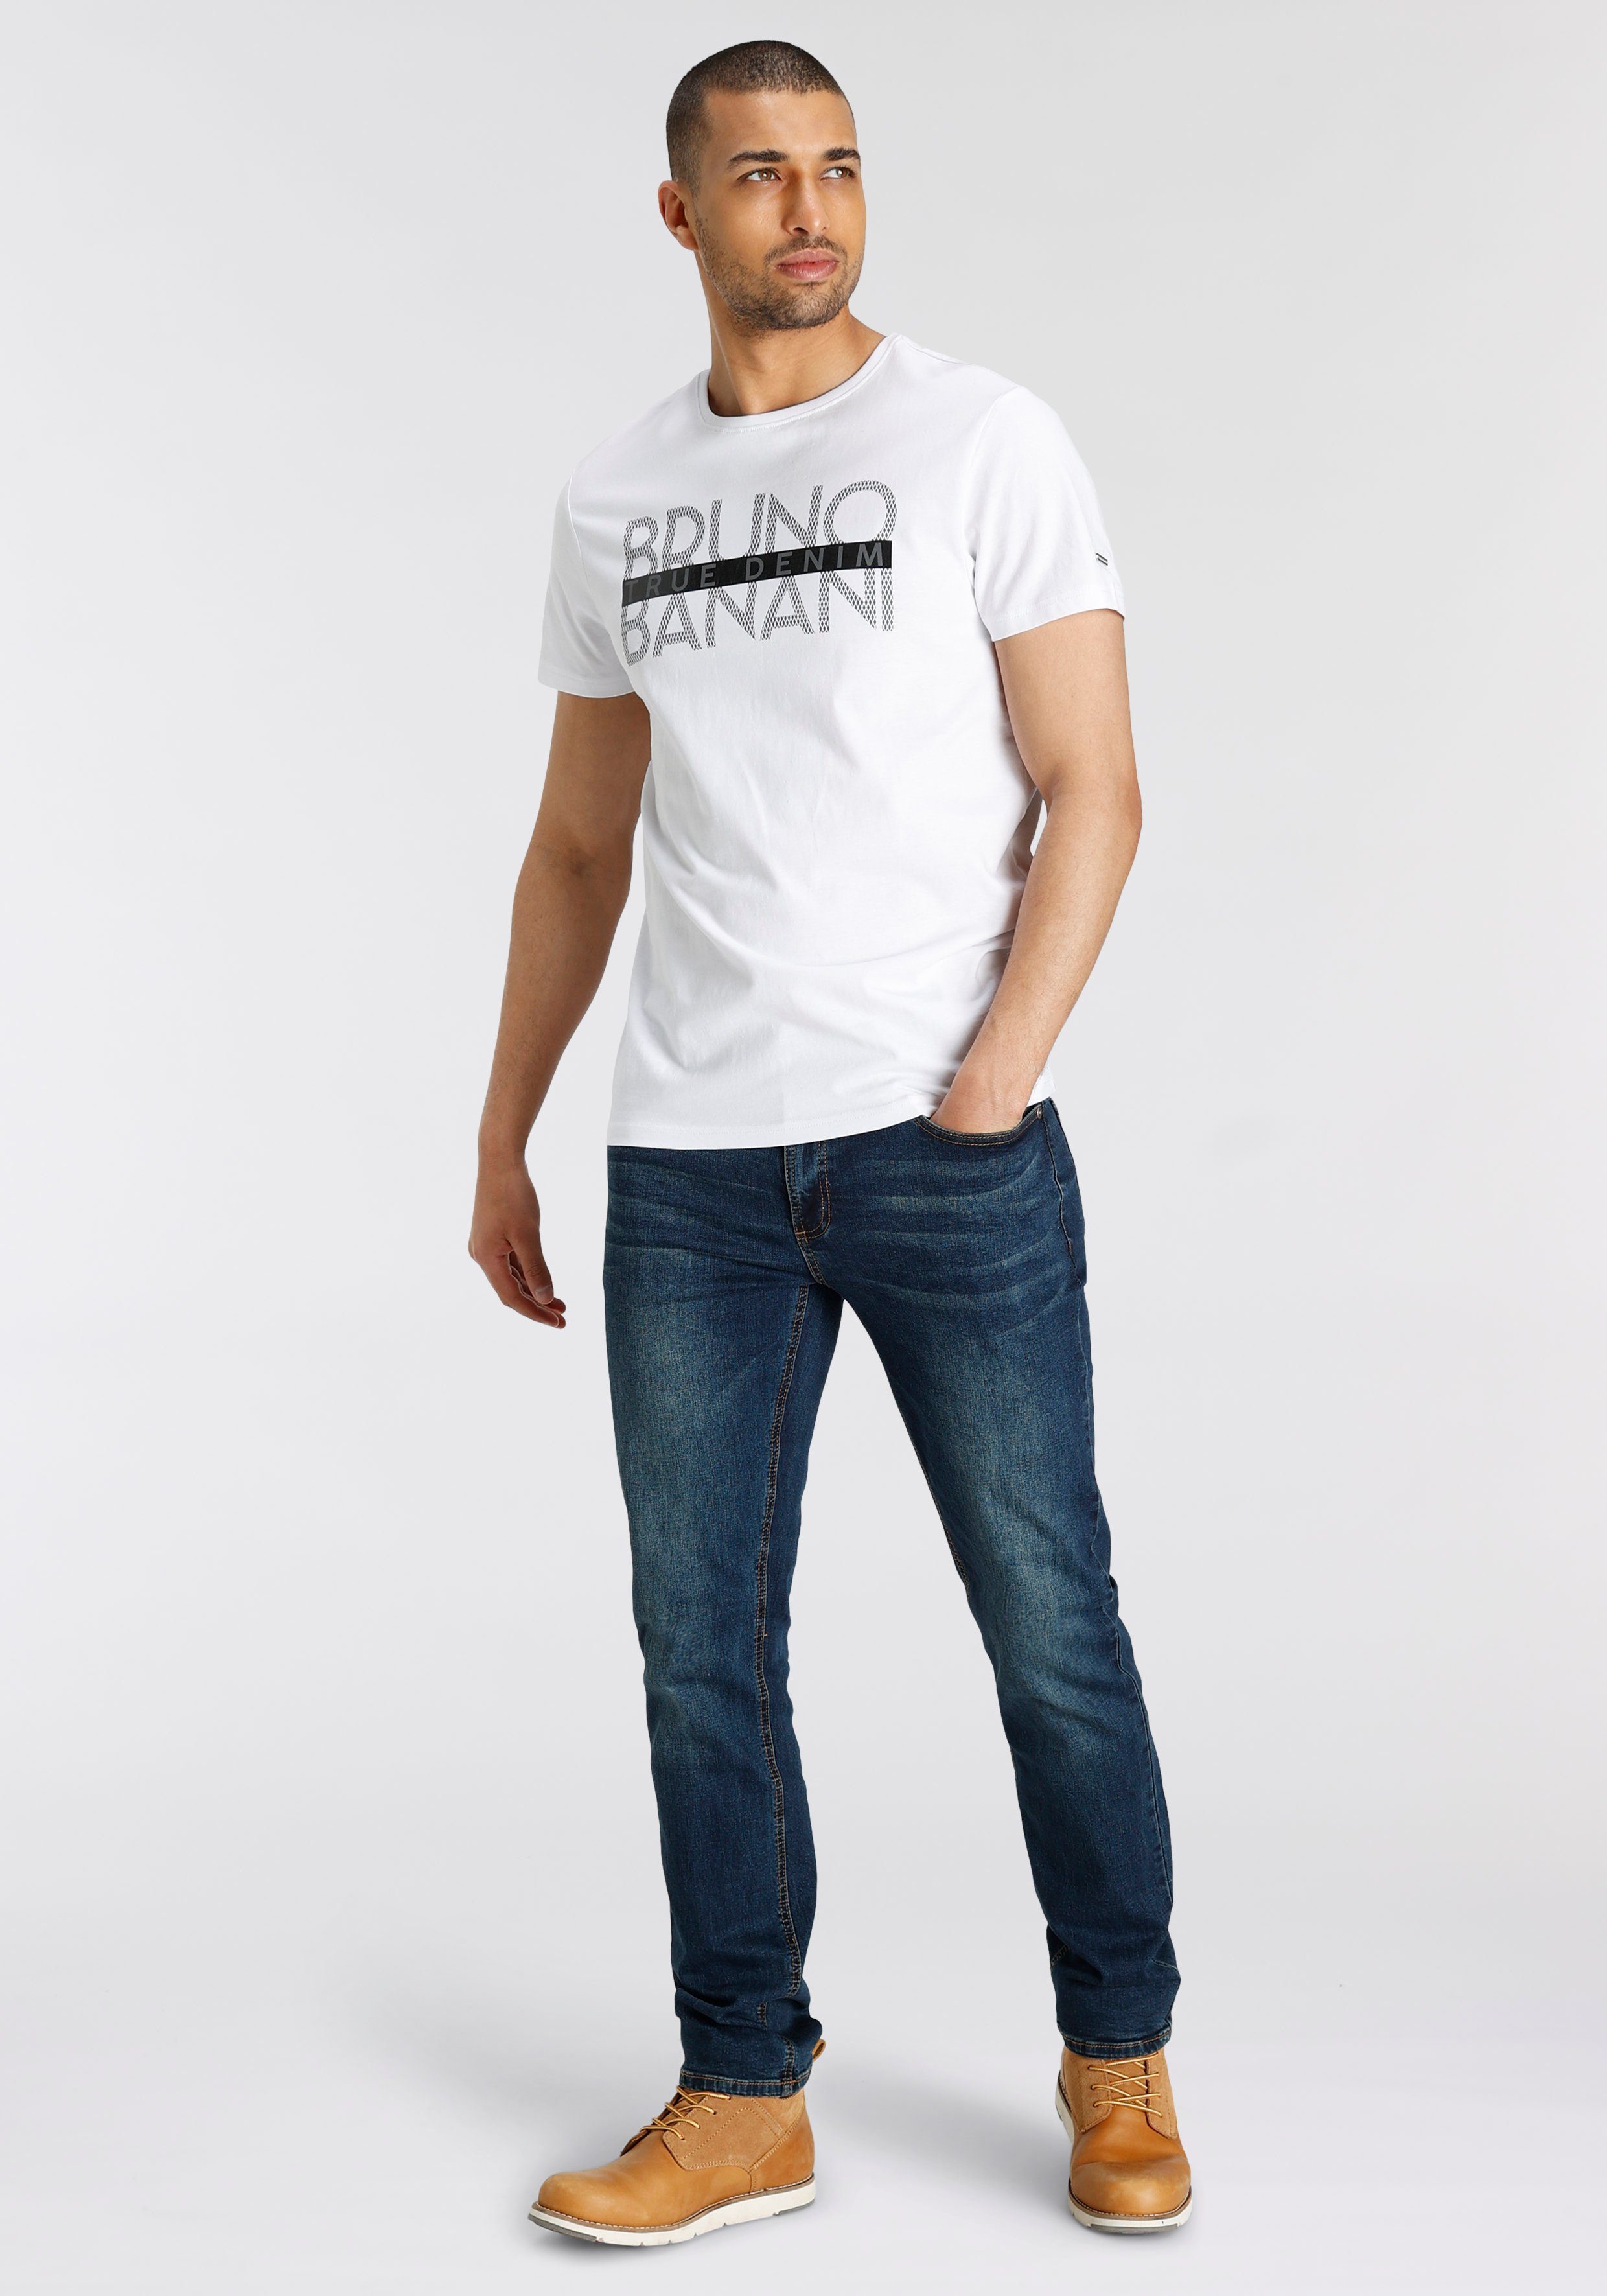 T-Shirt mit Banani Print glänzendem Bruno weiß